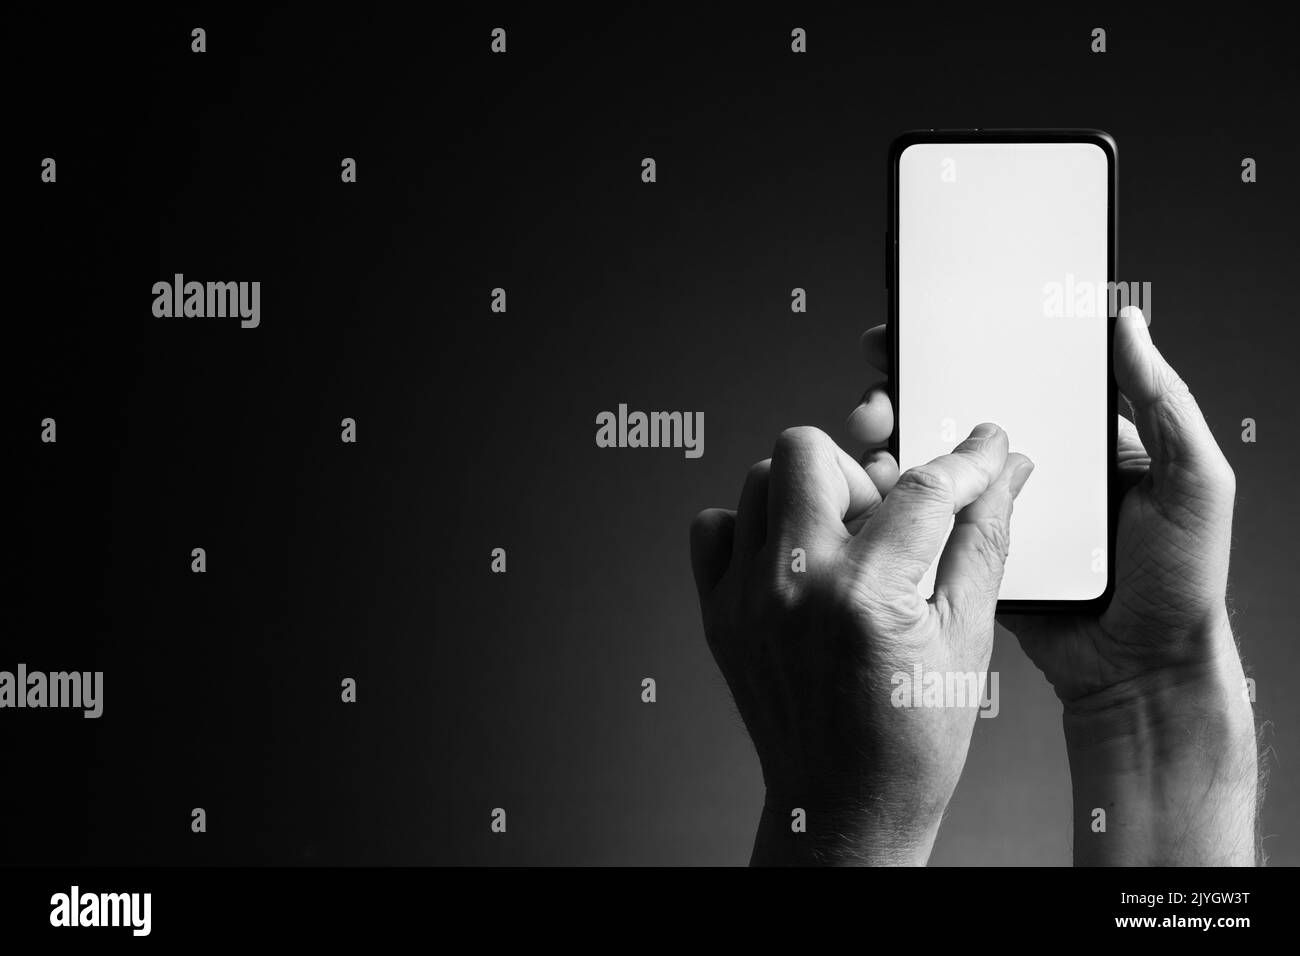 Image en noir et blanc des mains de l'homme tenant le smartphone et zoom par pincement avec écran blanc vierge isolé sur fond sombre avec espace de copie Banque D'Images